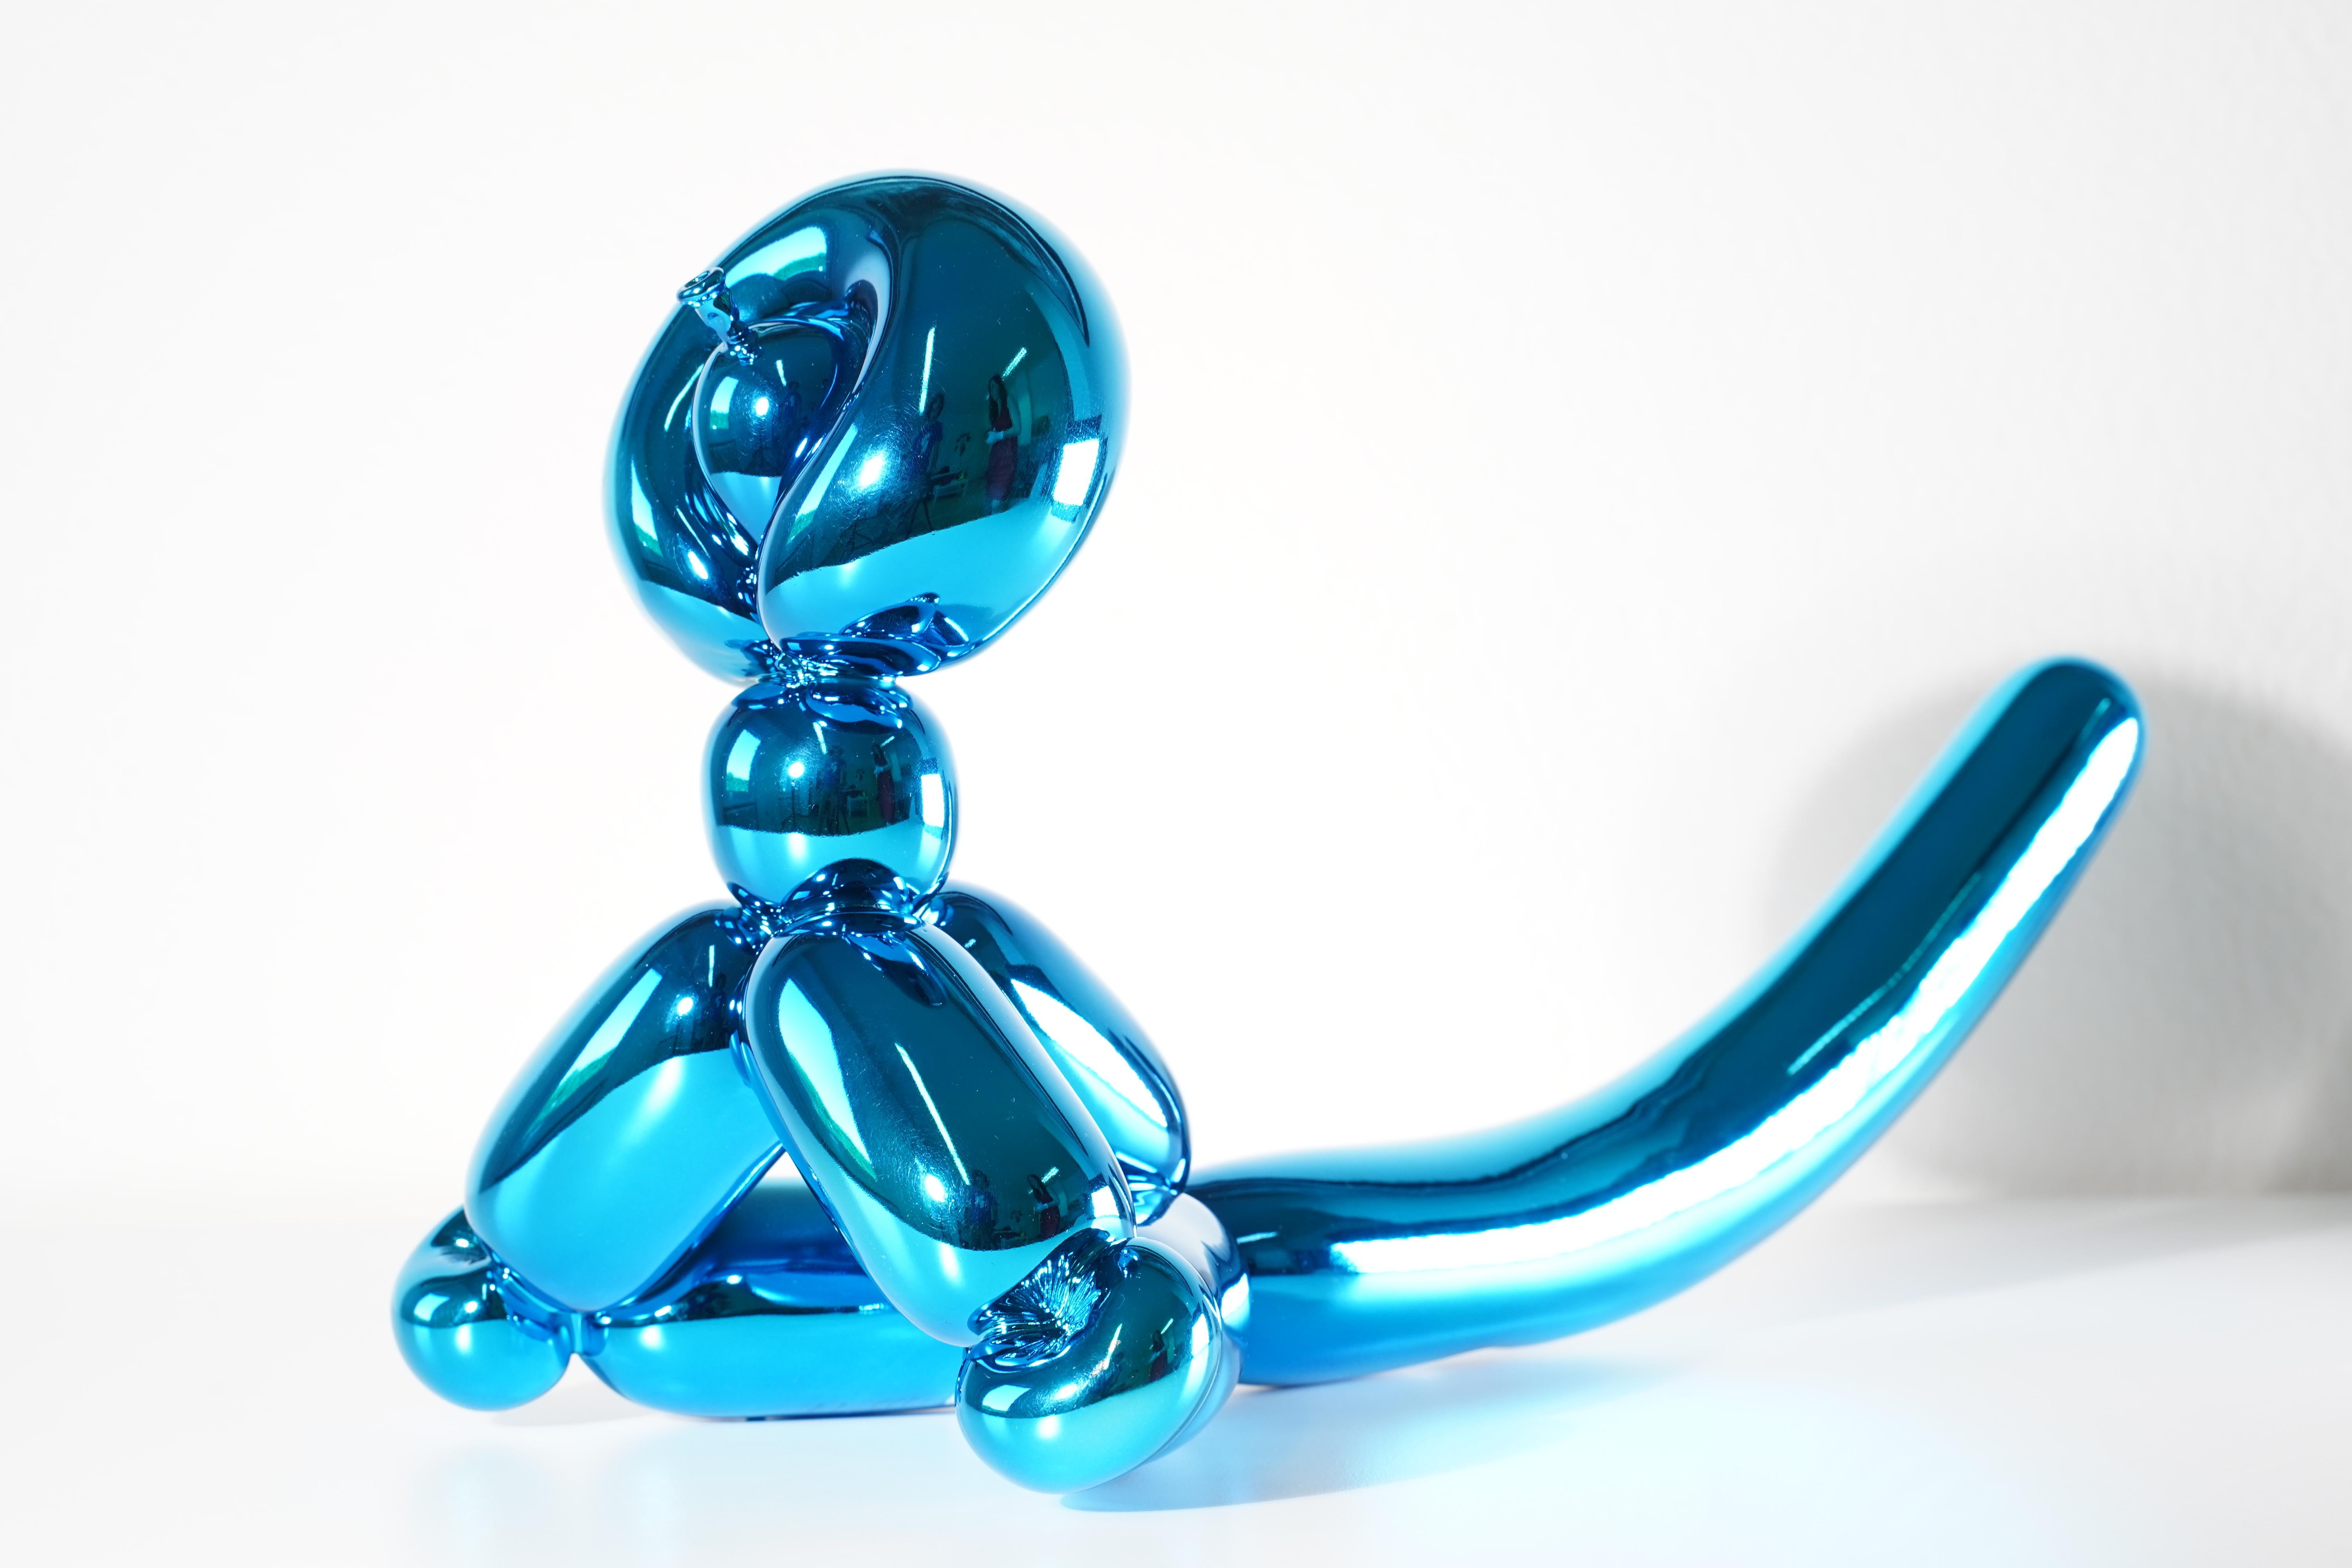 Balloon Monkey (Blue) - Jeff Koons, 21st Century, Contemporary, Porcelain, Sculpture, Decor, Limited Edition

Porcelaine de Limoges avec revêtement chromatique métallisé
Edition de 999
Signé et numéroté
En parfait état, tel qu'il a été acheté auprès